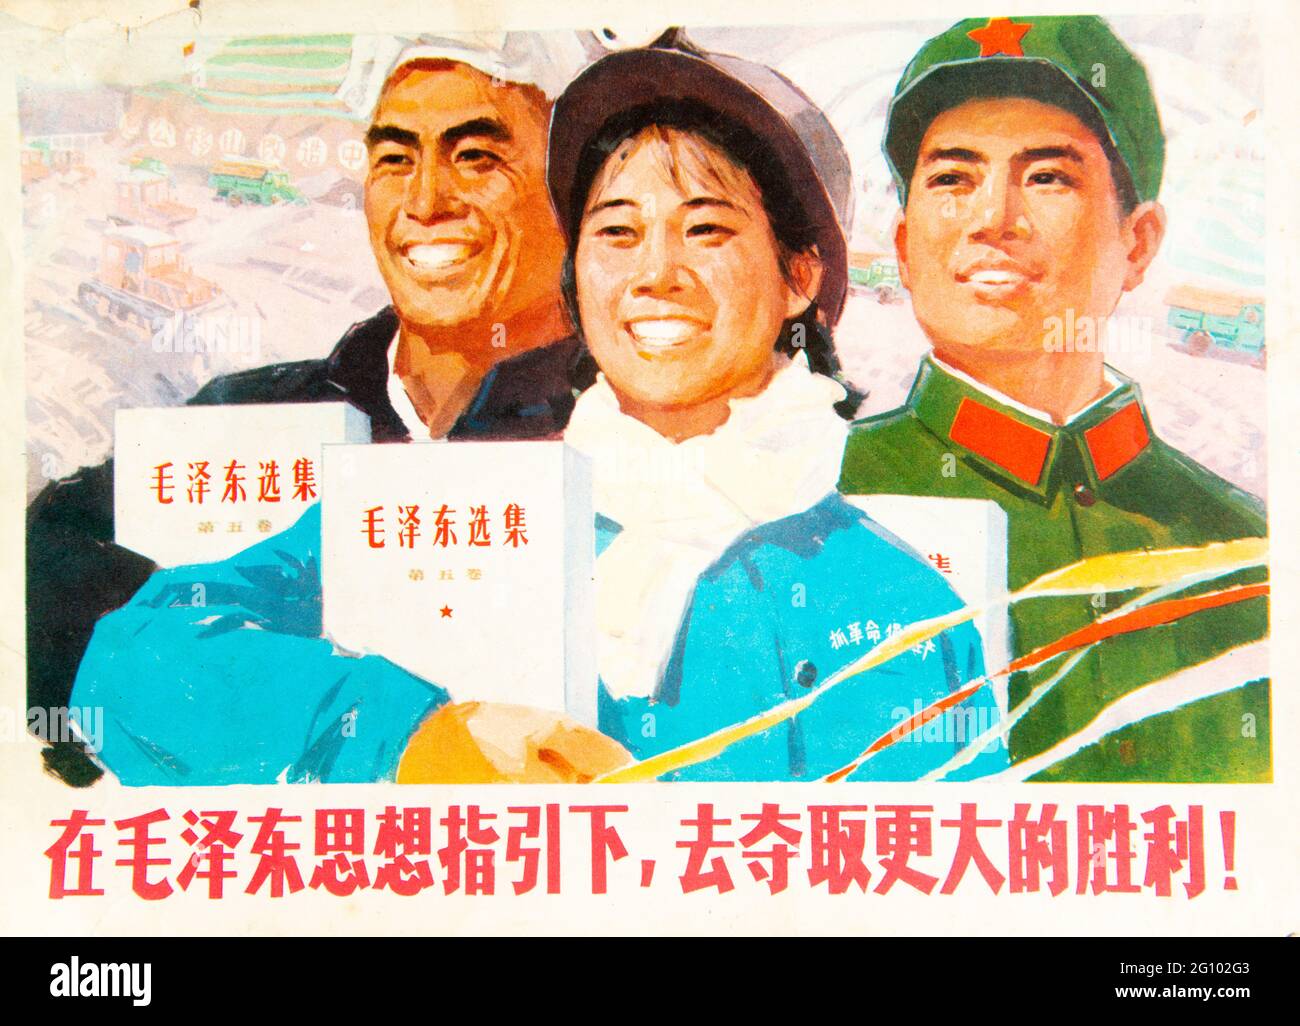 Il poster della propaganda politica mostra lavoratori, contadini e soldati che studiano le antologie di Mao Zedong durante la rivoluzione culturale cinese. Foto Stock